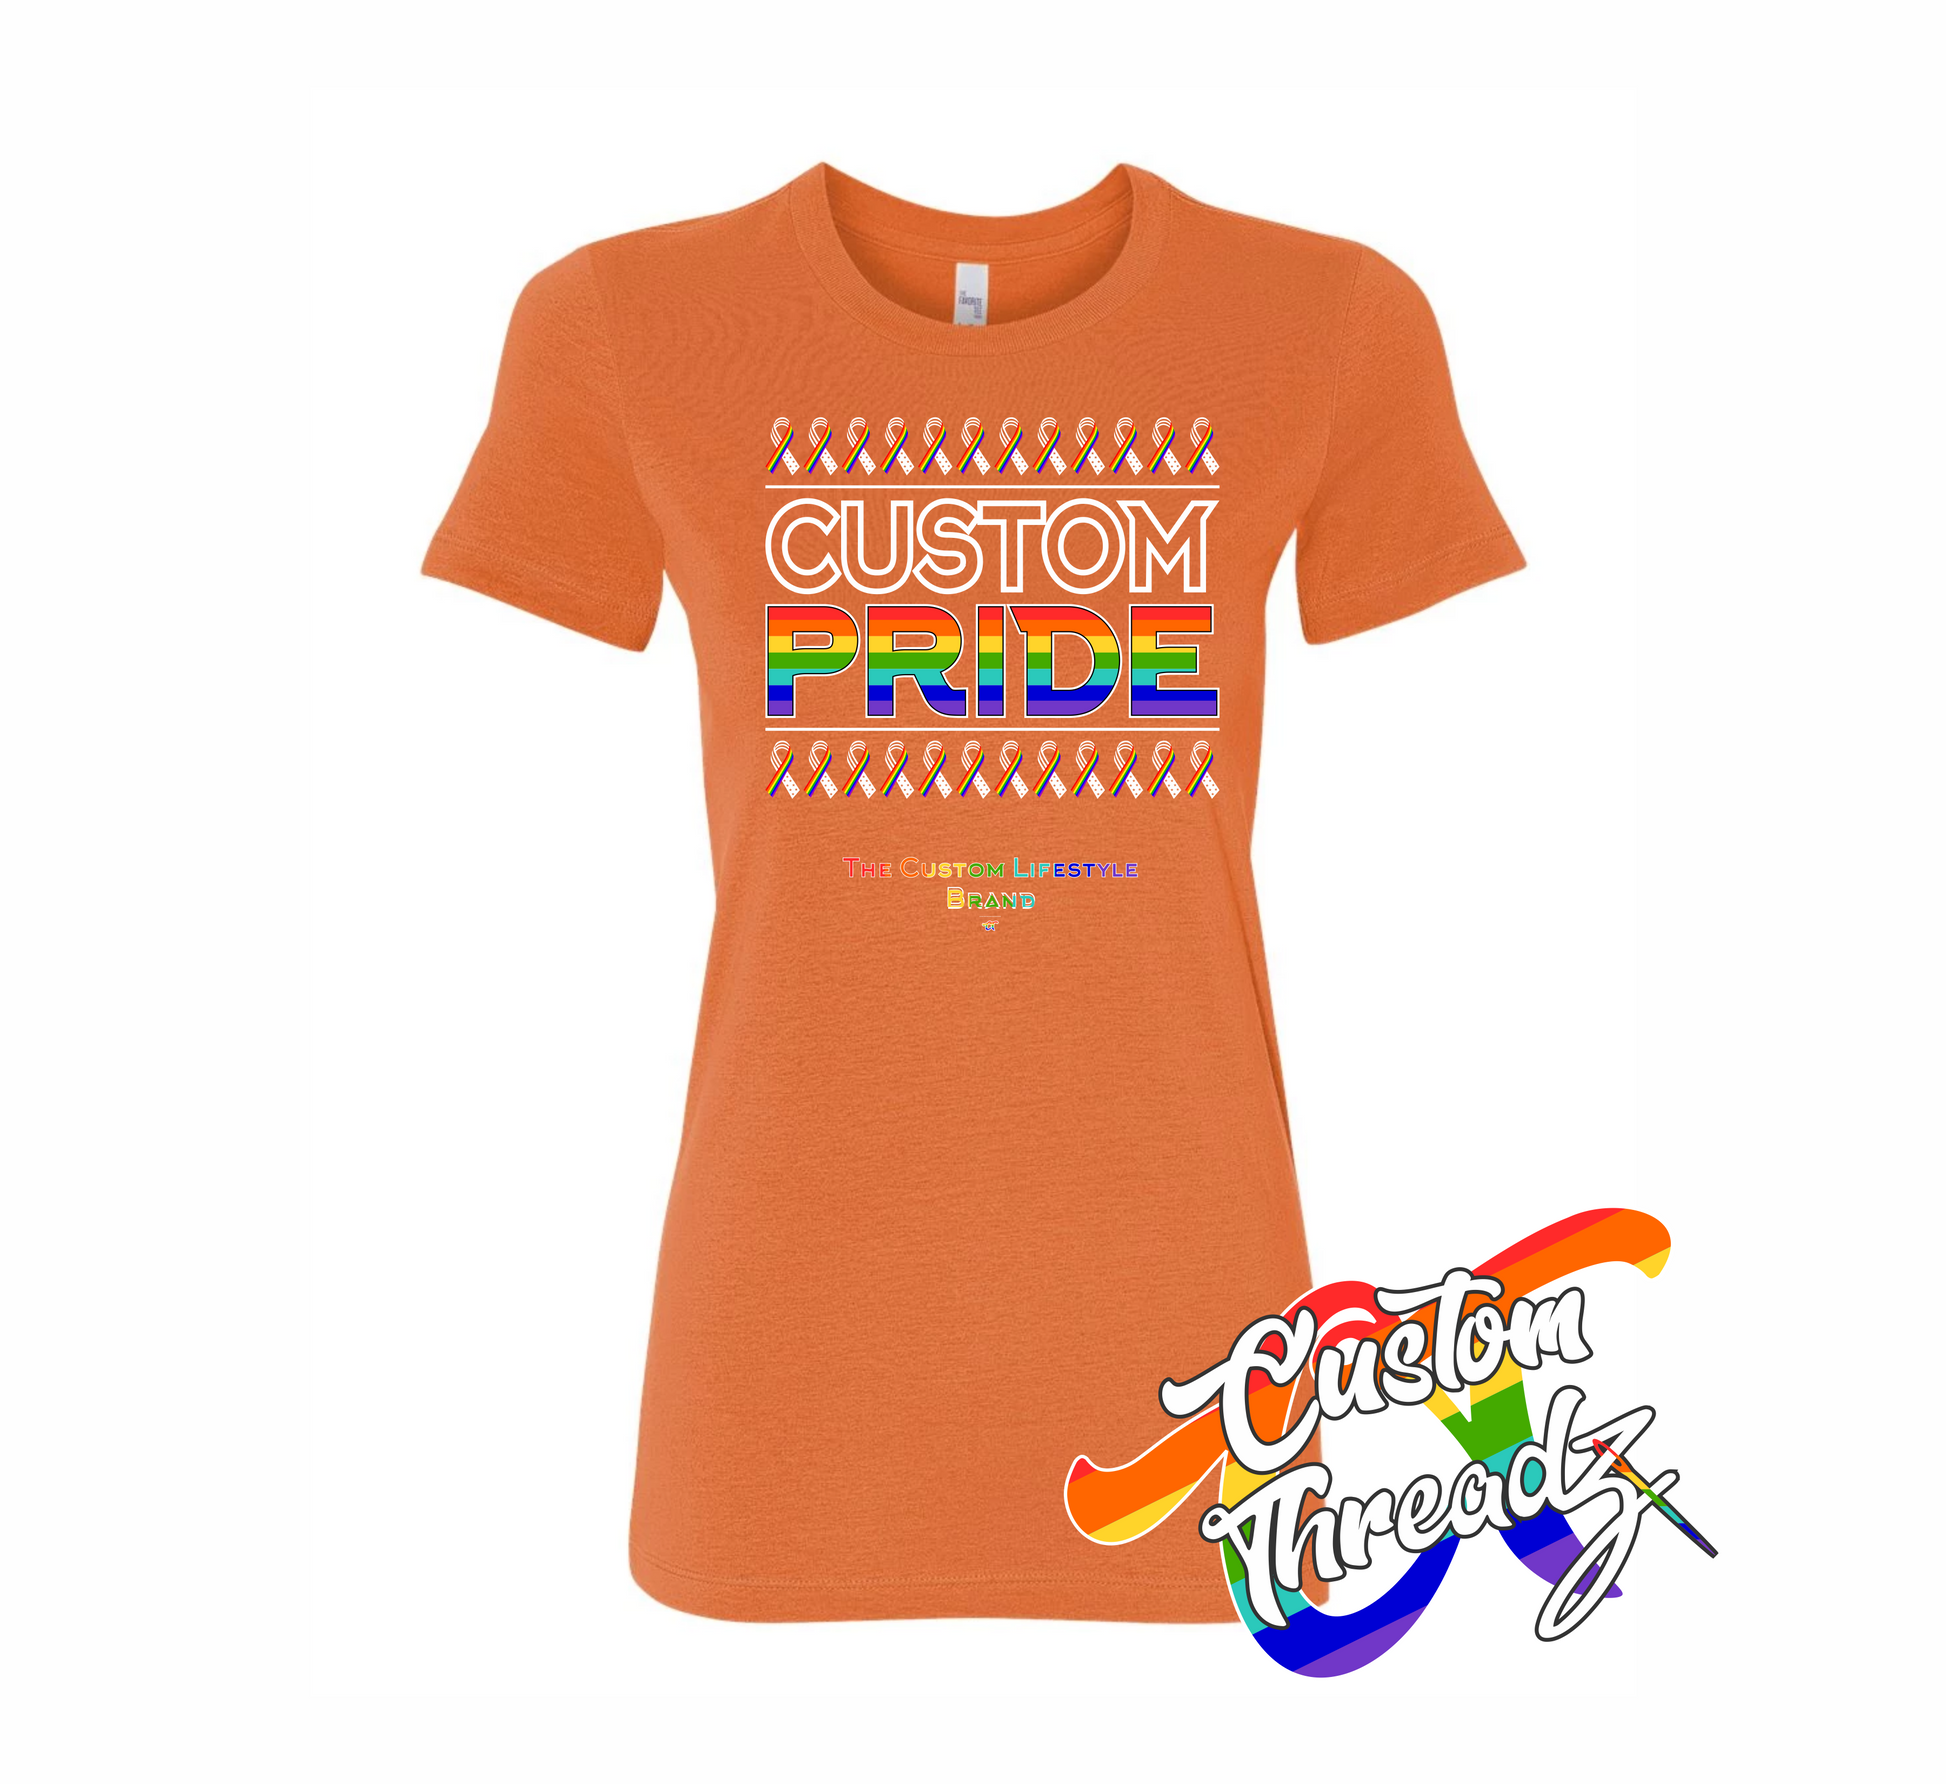 orange womens tee with custom pride rainbow DTG printed design